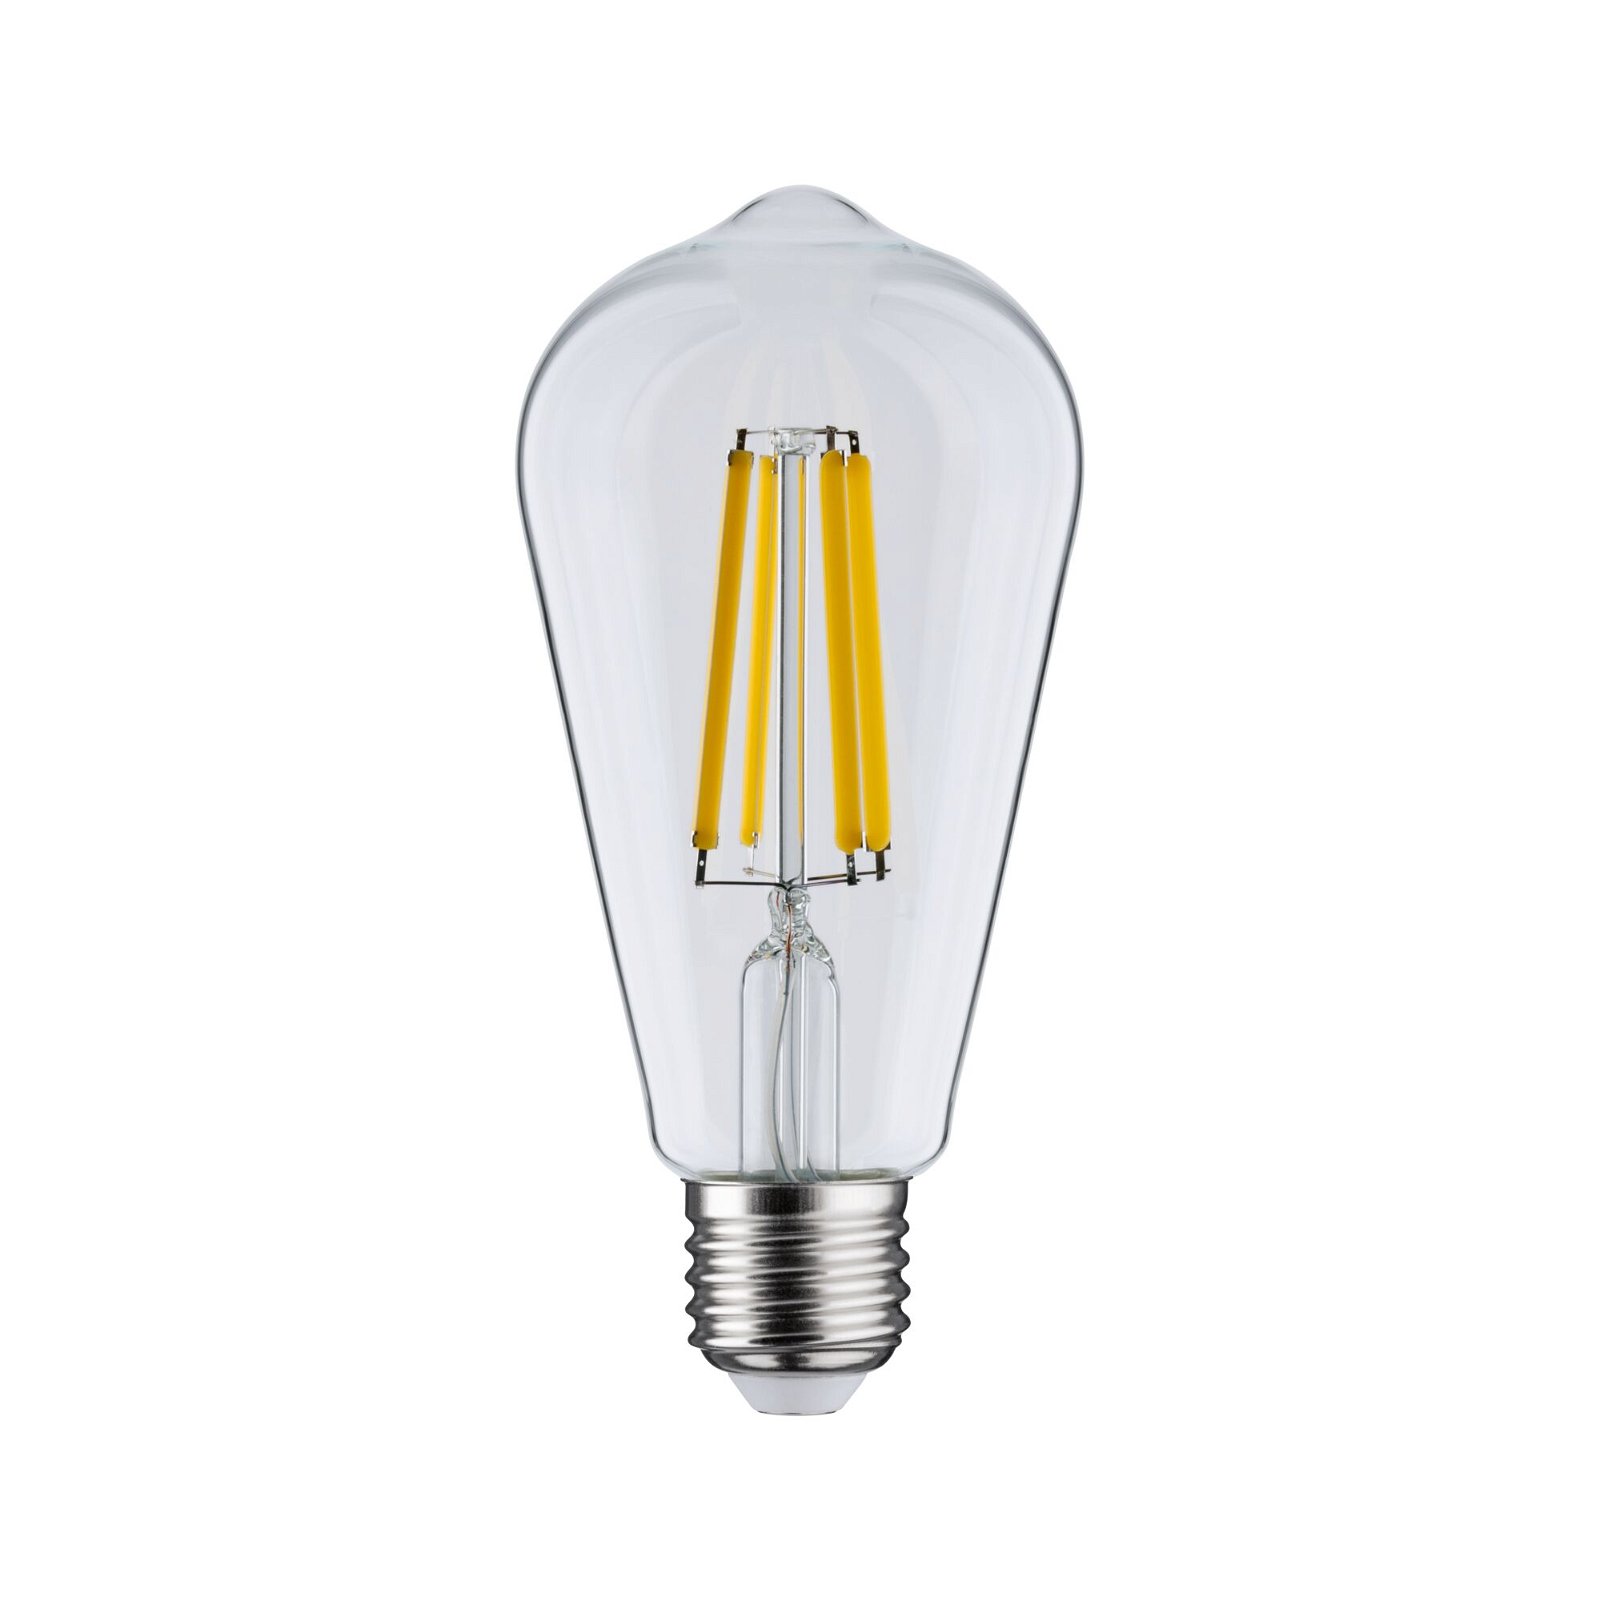 Eco-Line Filament 230 V Ampoules LED ST64 E27 840lm 4W 3000K Clair